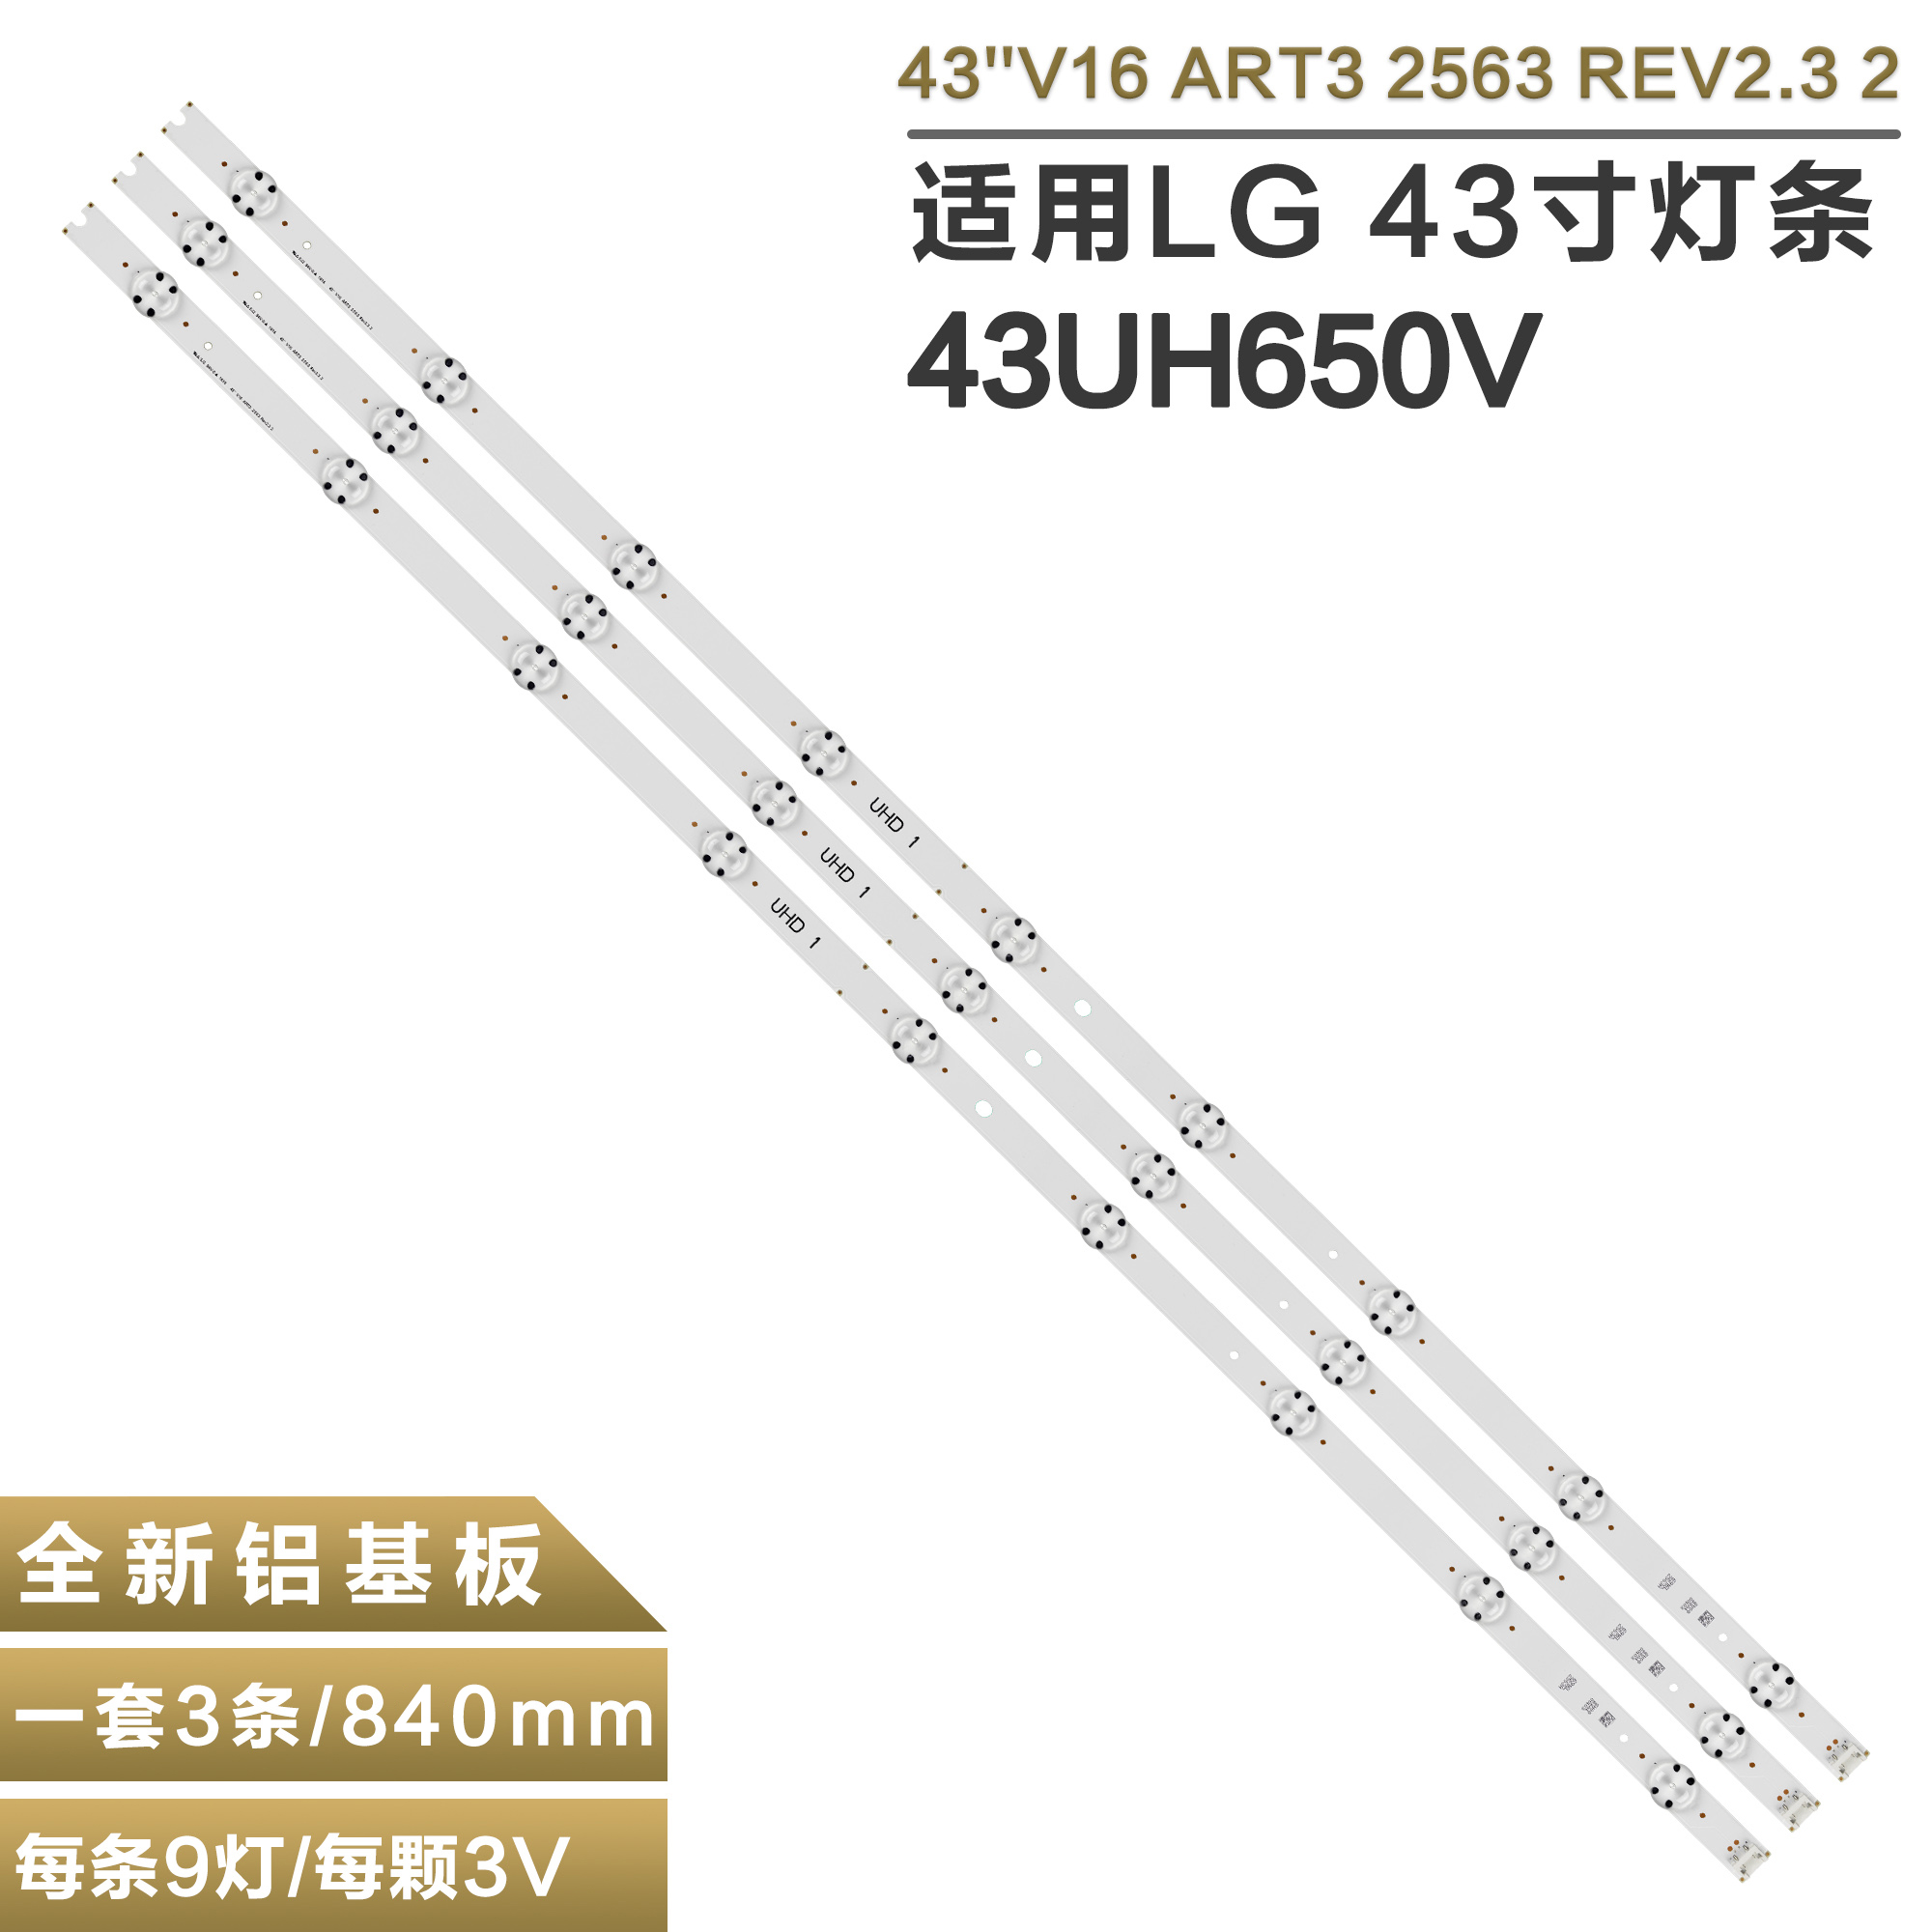 适用LG 43UH650V液晶灯条43''V16 ART3 2563 REV2.3 6916L-2563A 电子元器件市场 显示屏/LCD液晶屏/LED屏/TFT屏 原图主图